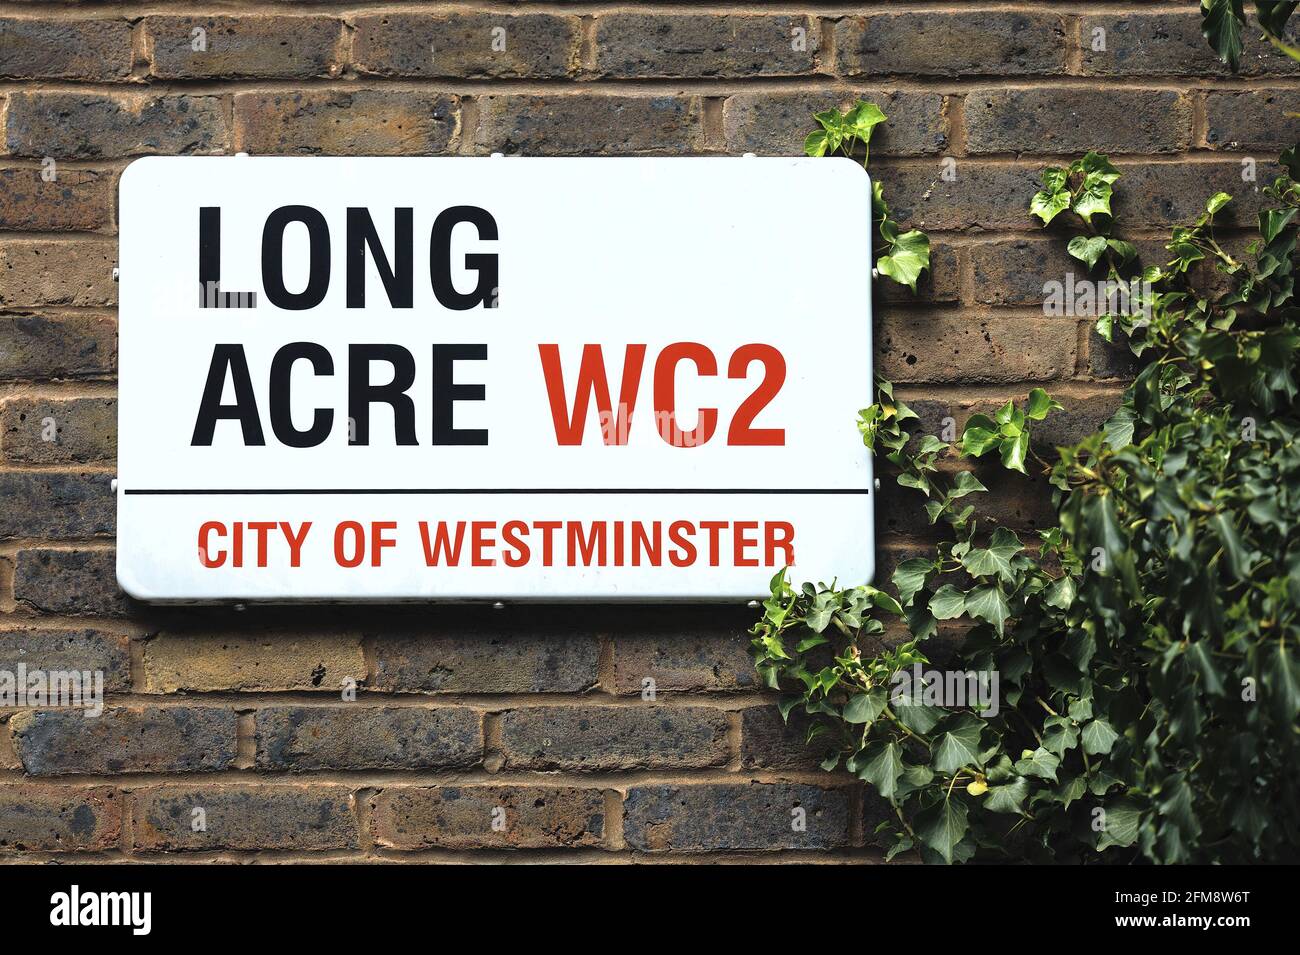 Londra, Inghilterra, Regno Unito. Cartello stradale: Long Acre, WC2 Foto Stock